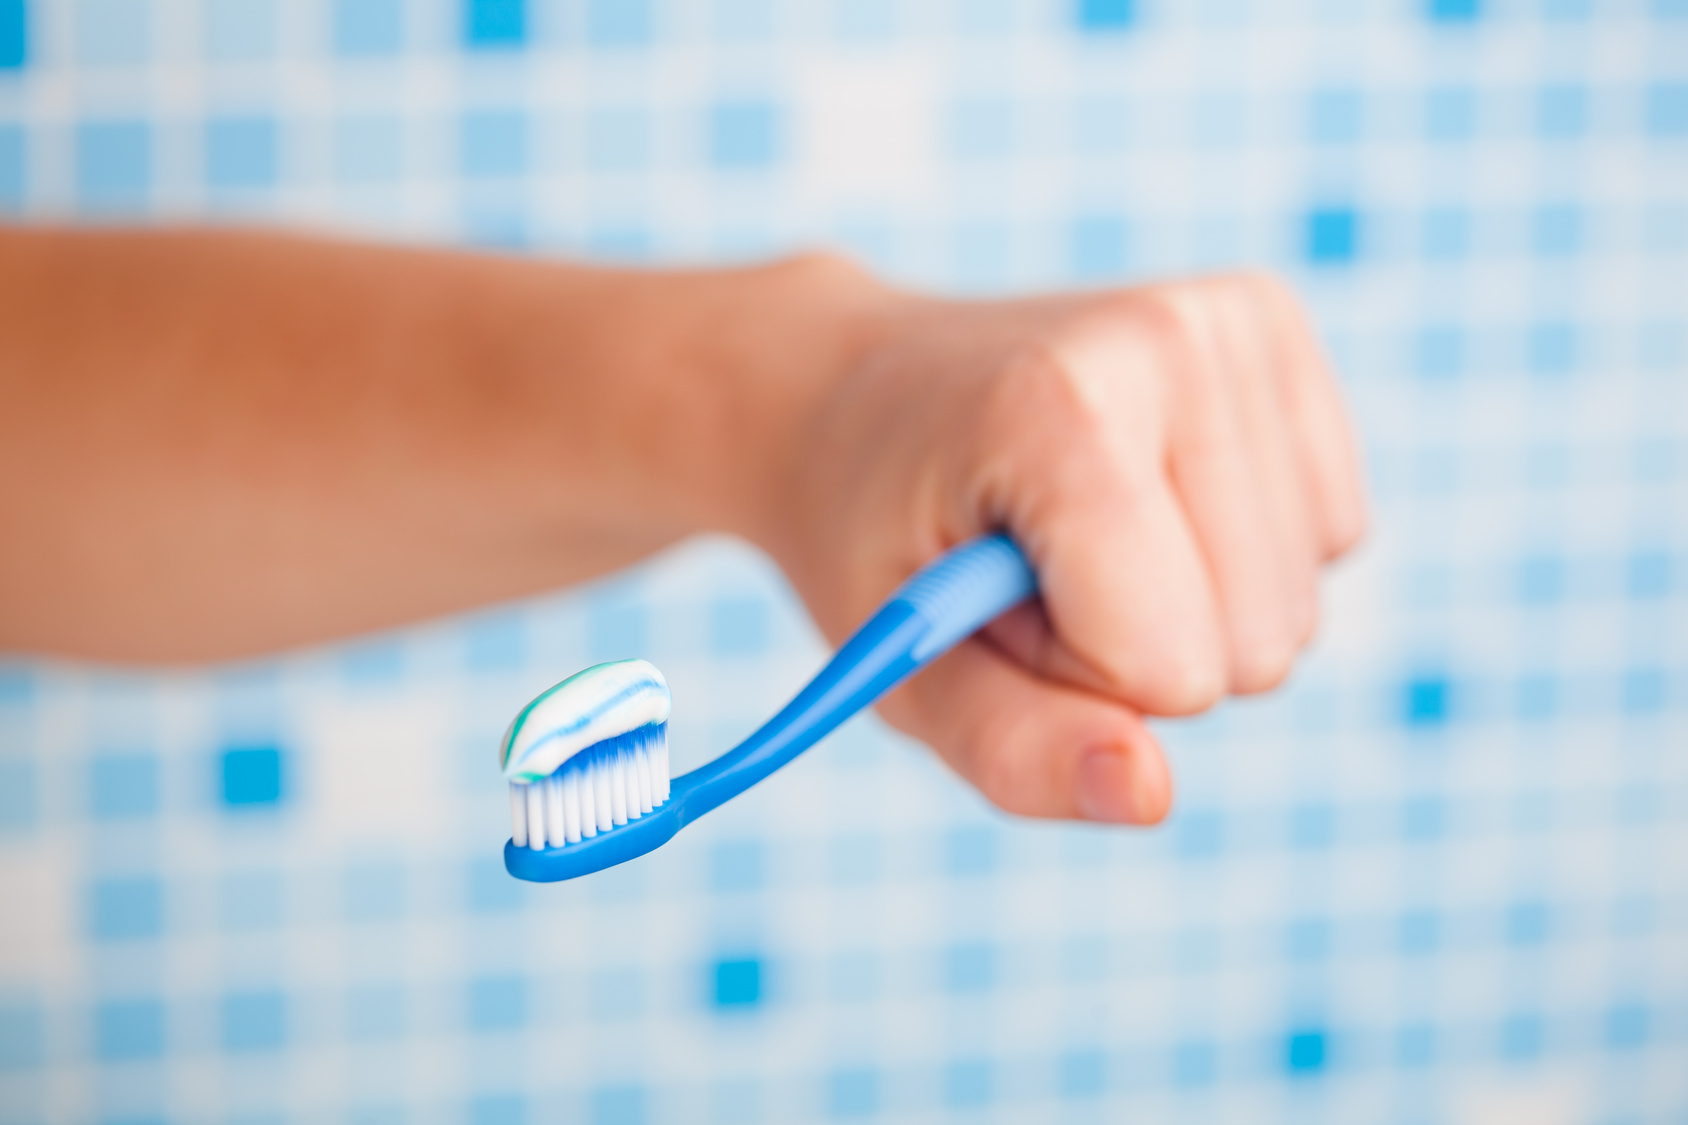 Según un estudio en la Universidad de Dinamarca: La pasta dental podría afectar la fertilidad masculina